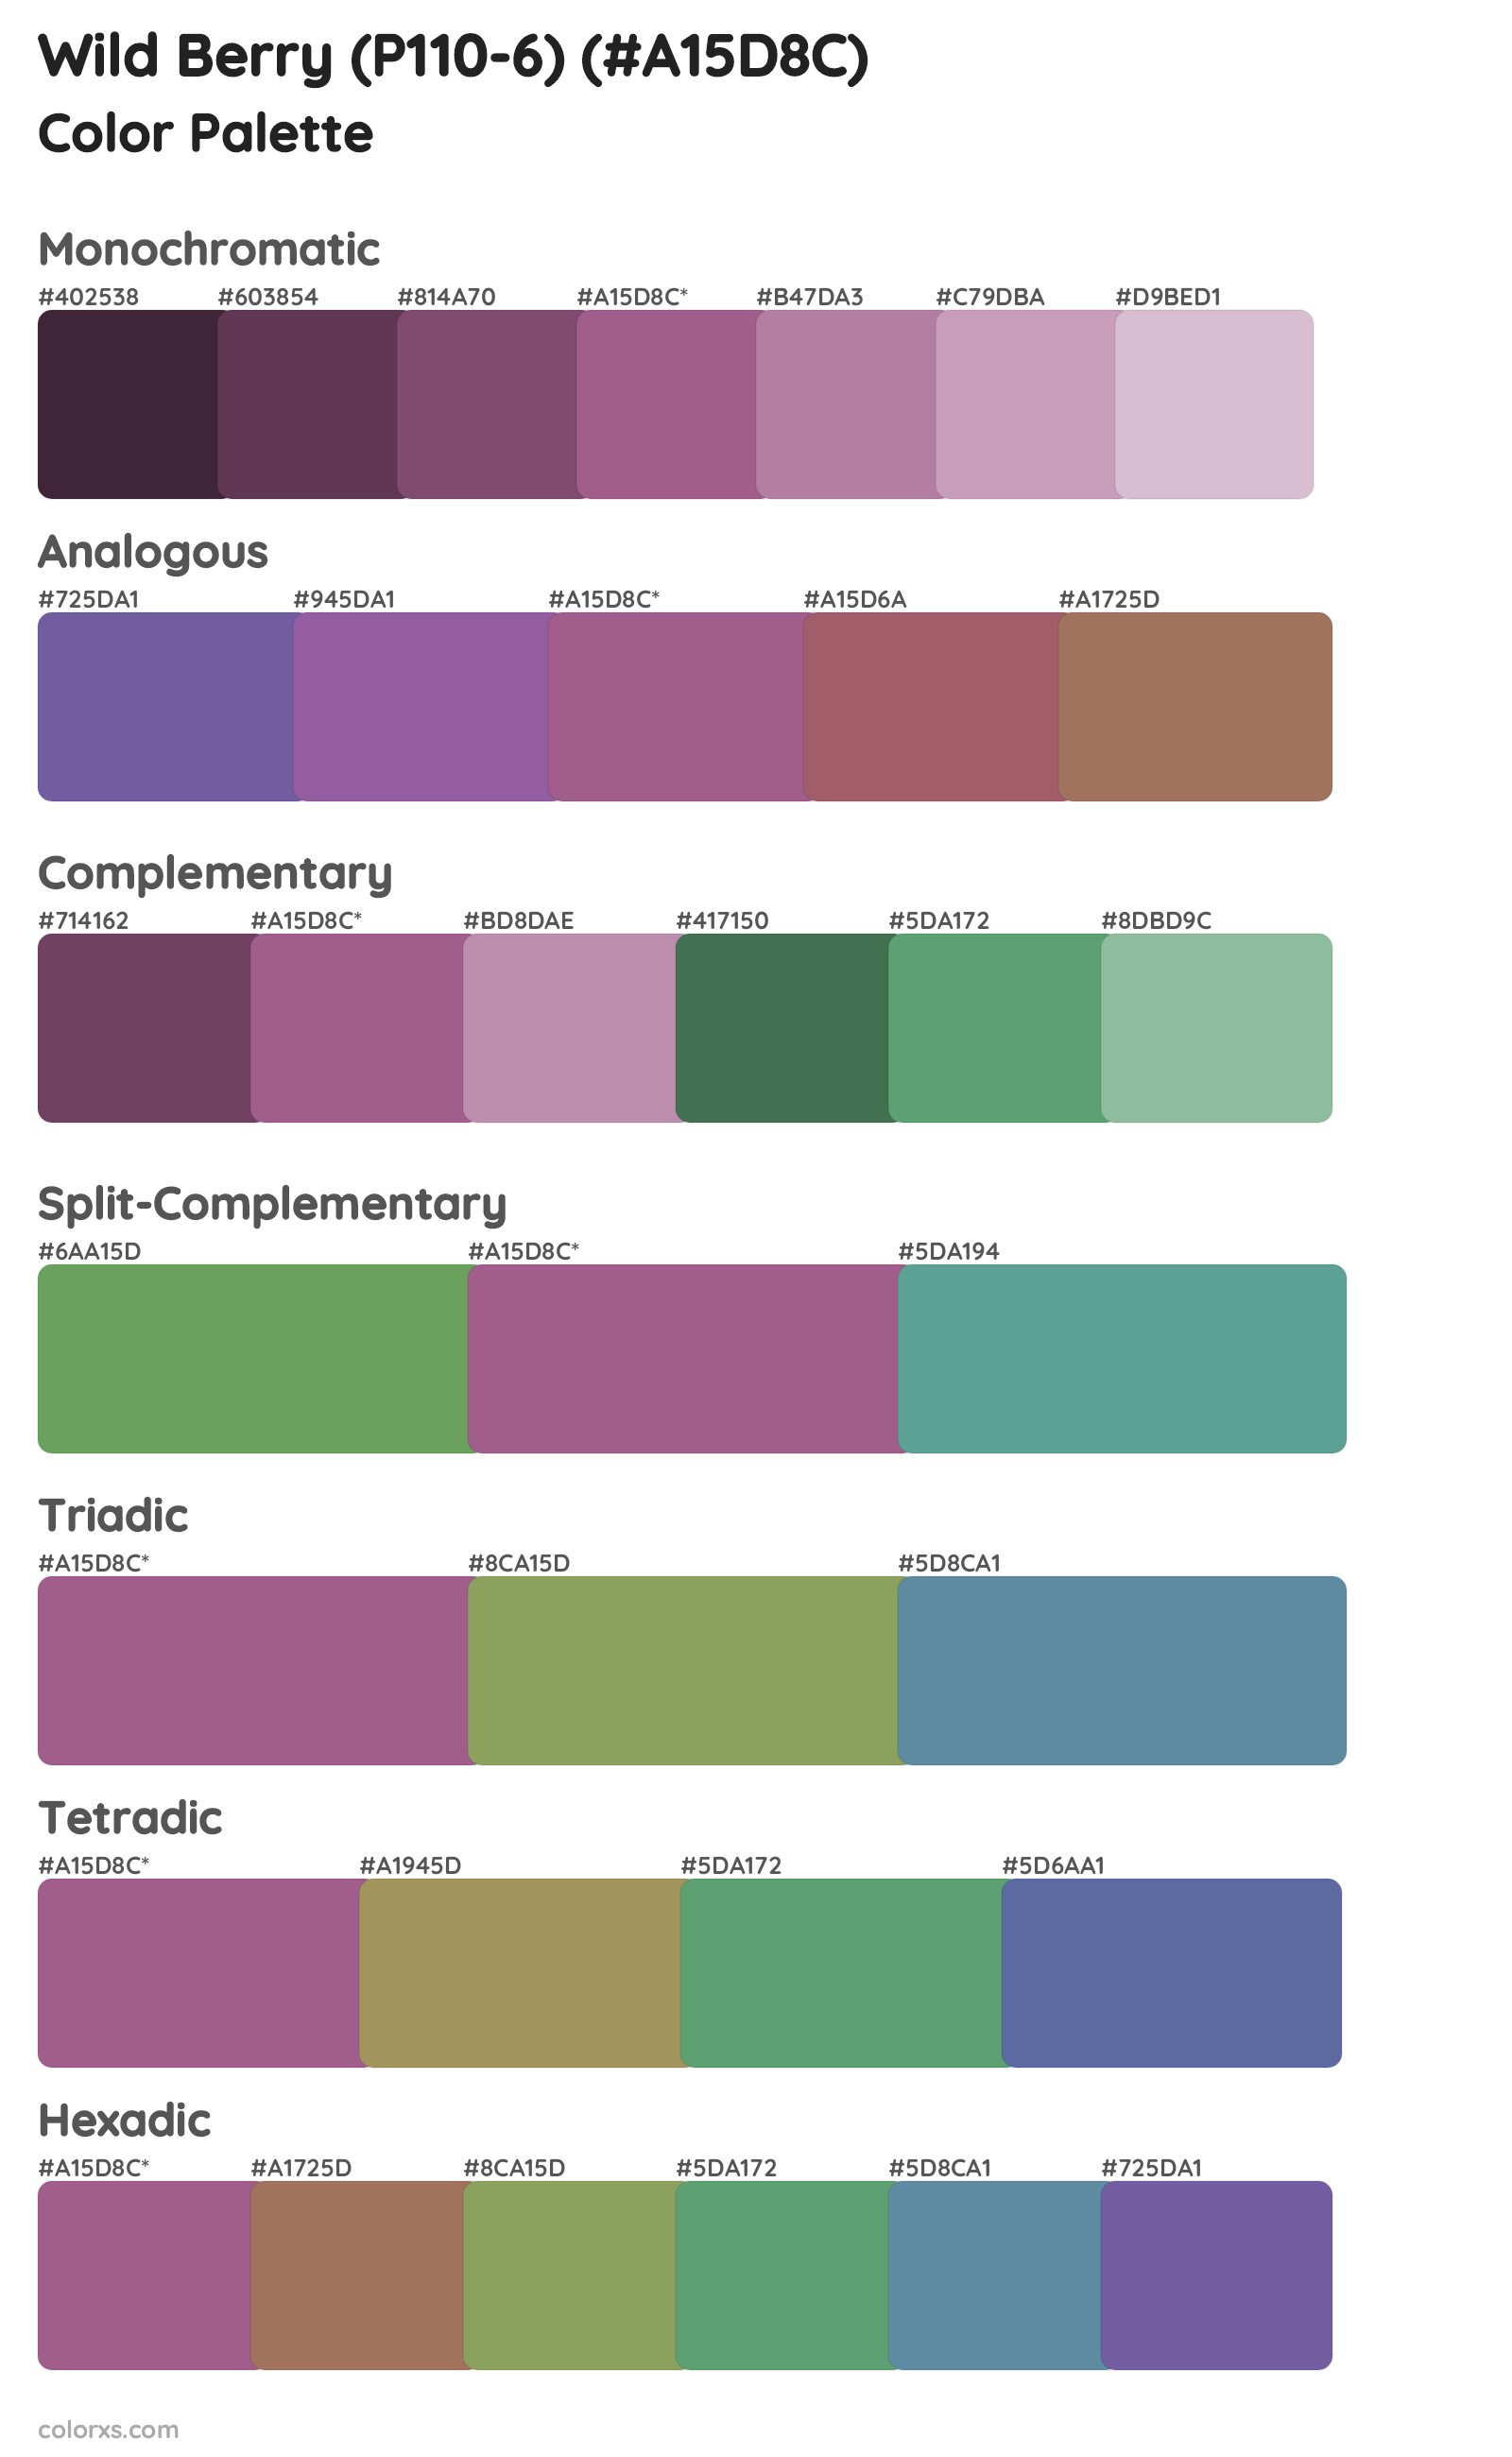 Wild Berry (P110-6) Color Scheme Palettes